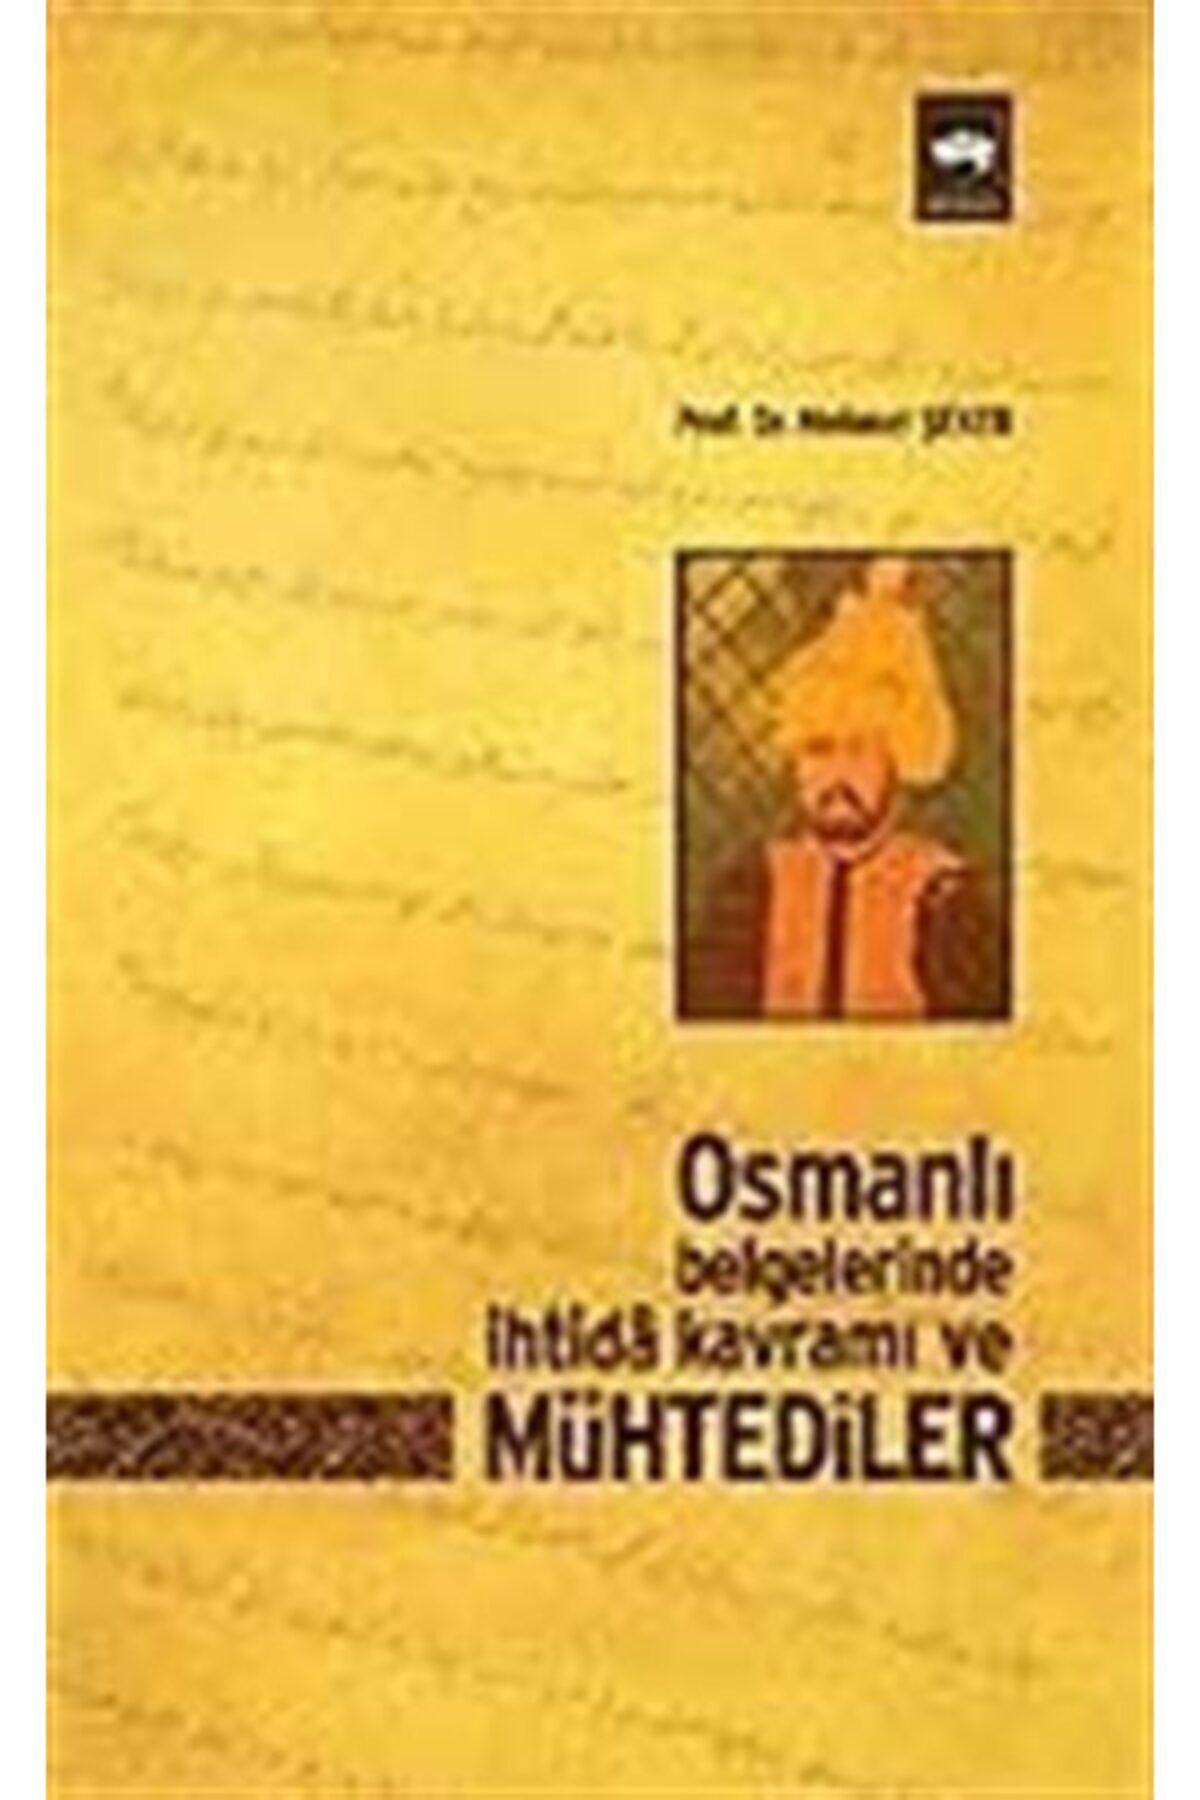 Ötüken Neşriyat Osmanlı Belgelerinde Ihtida Kavramı Ve Mühtediler